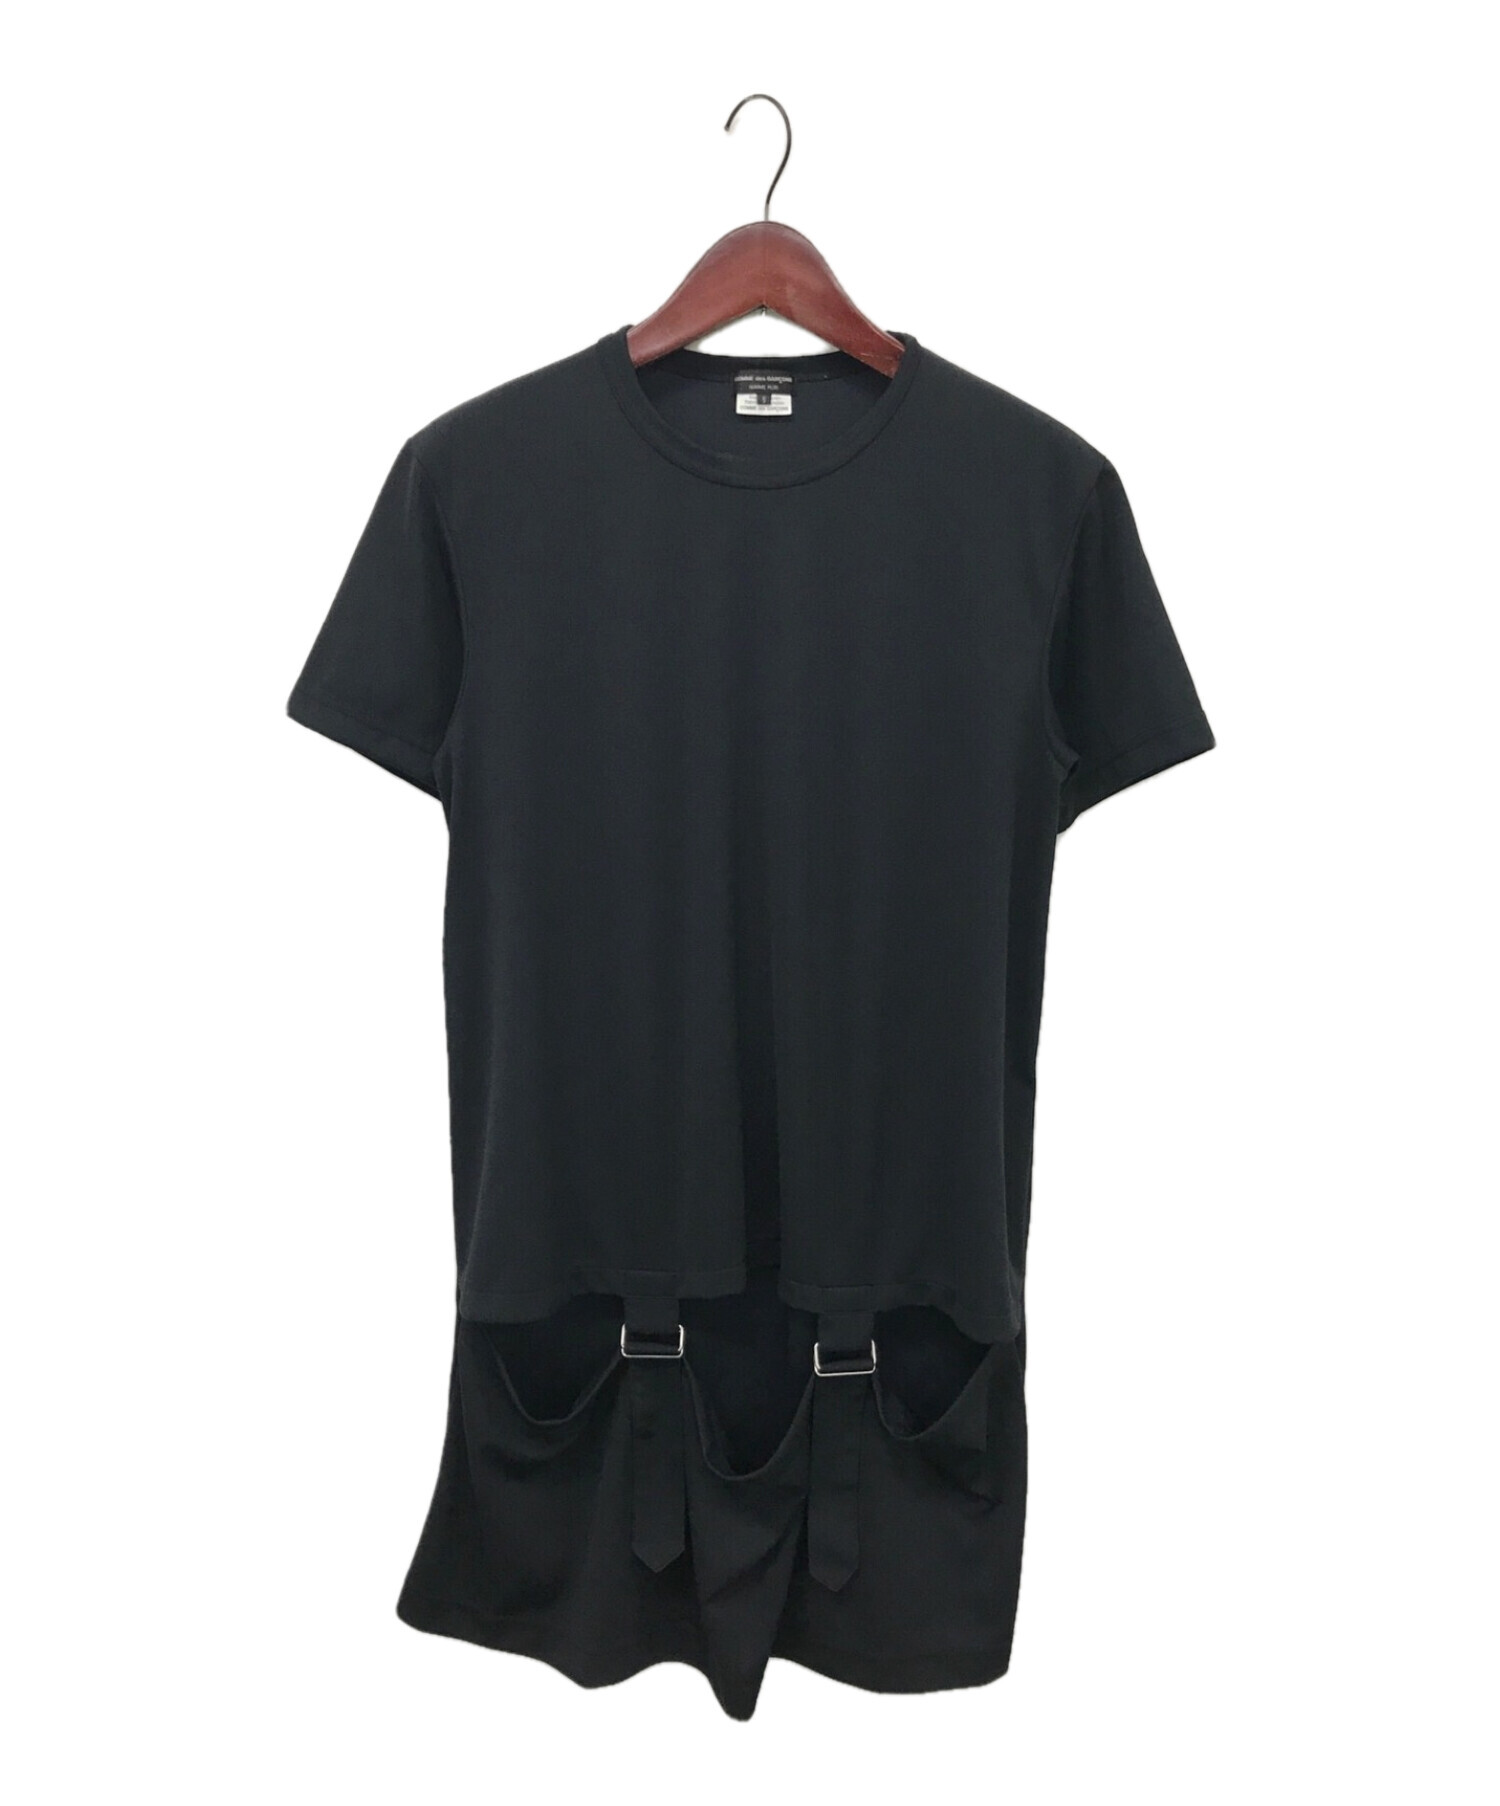 驚きの値段で ブラック コムデギャルソン ハーネスシャツ - シャツ 